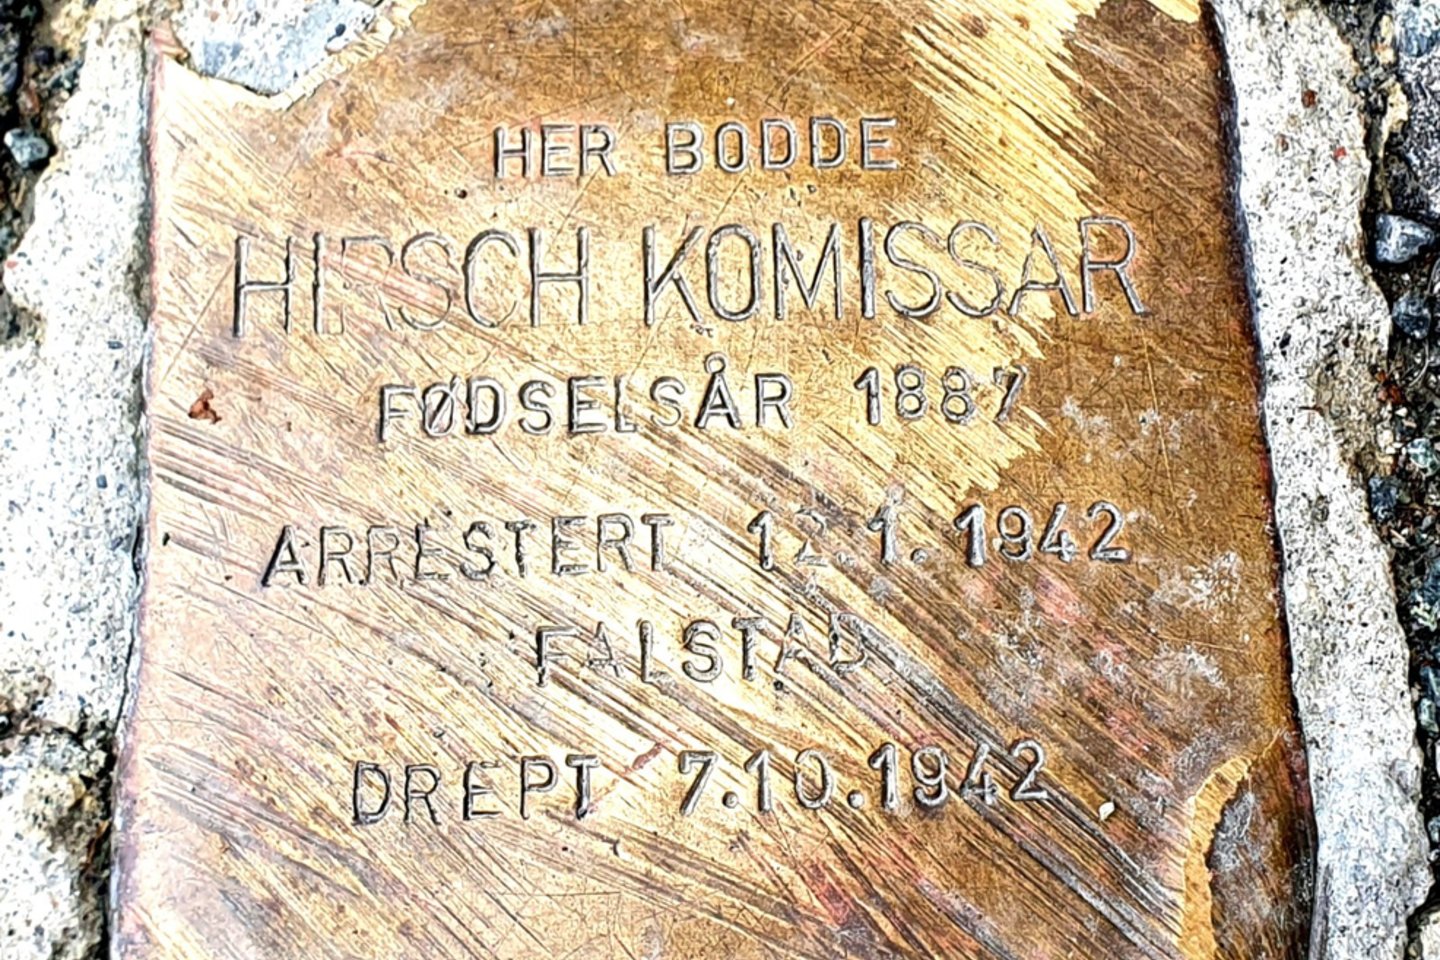 Nuo šio H.Komissaro atminimo akmens prasideda romanas. Žalvarinė plytelė įmūryta greta namo Trondheime, kuriame jis gyveno.<br> R.Mataitytės nuotr.